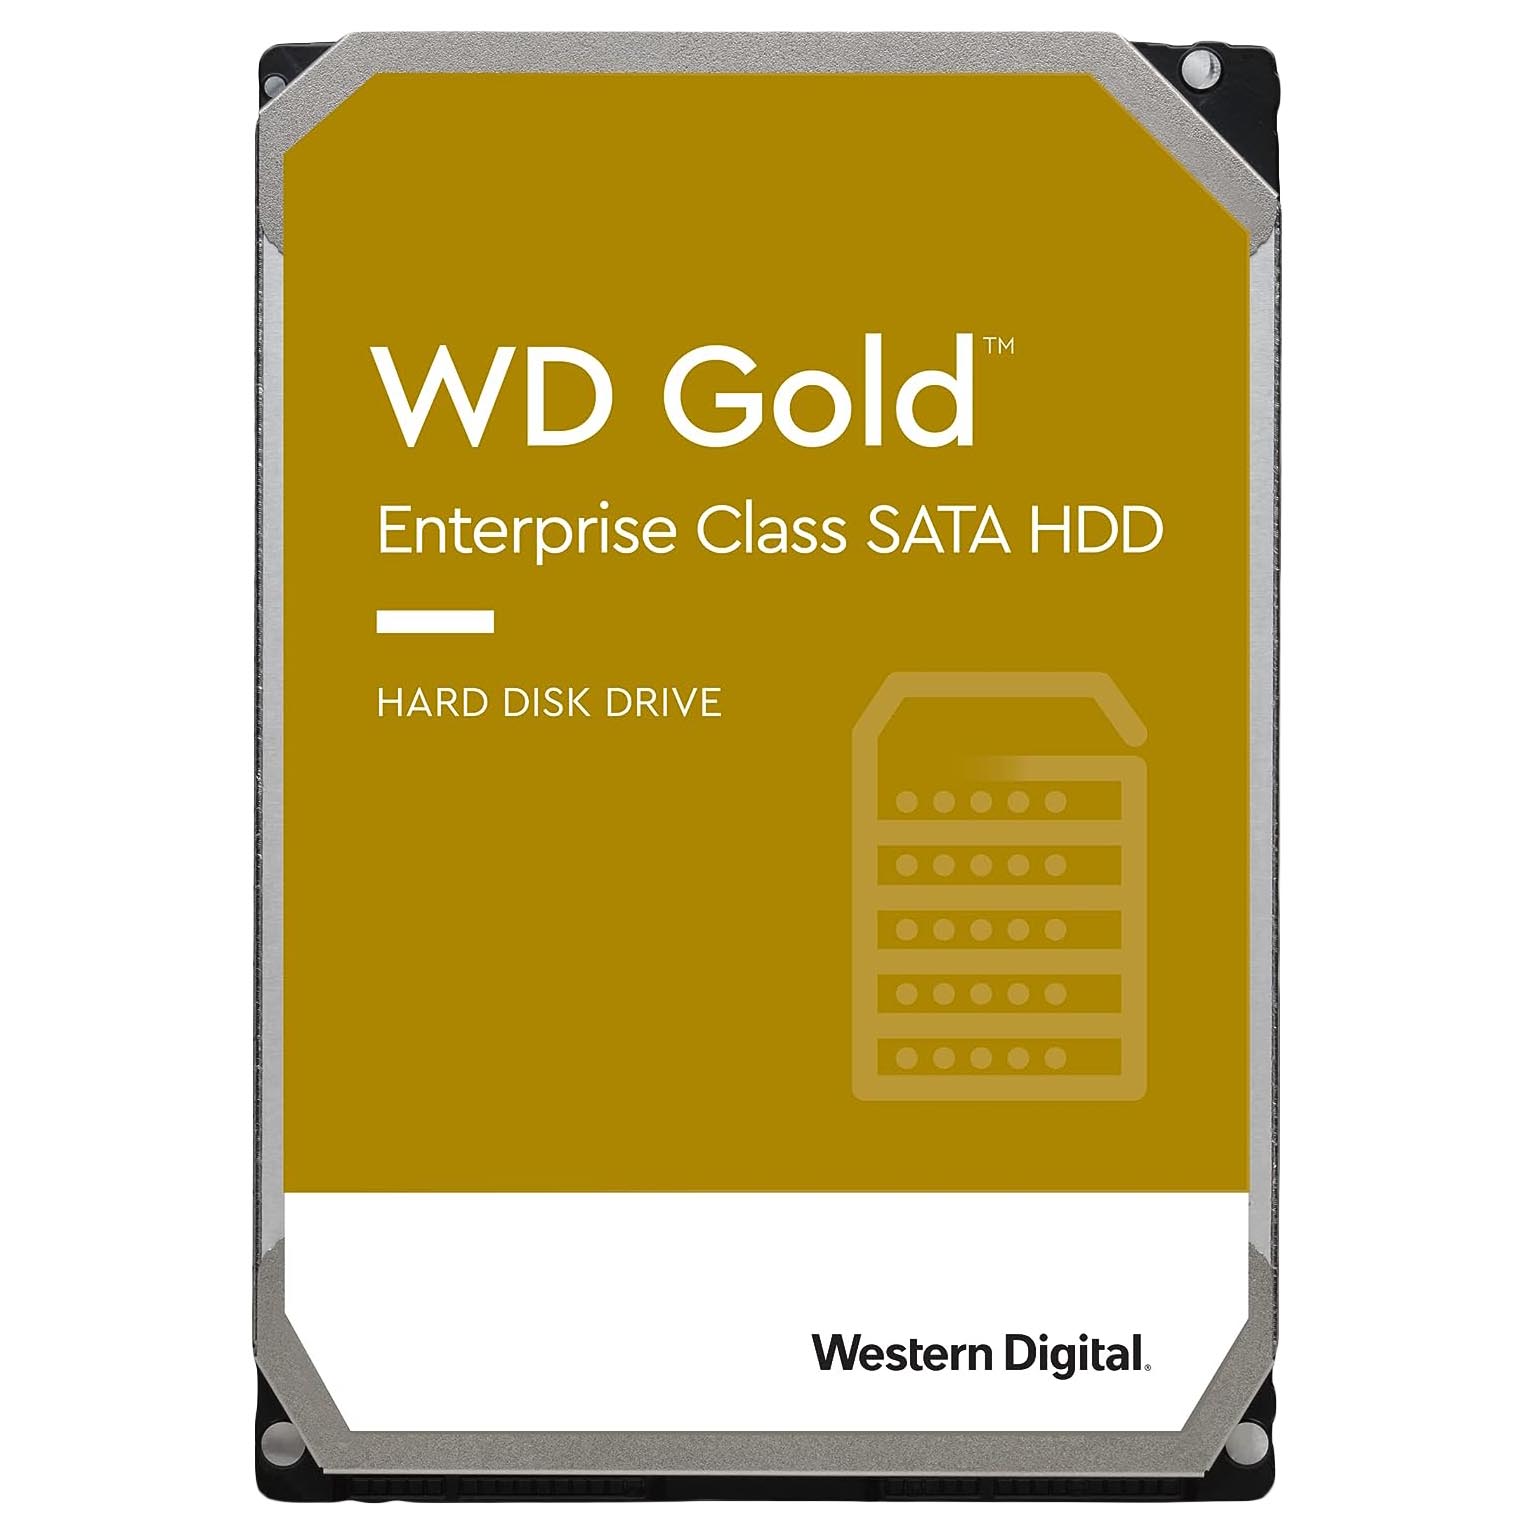 Внутренний жесткий диск Western Digital WD Gold Enterprise Class, WD181VRYZ, 18Тб